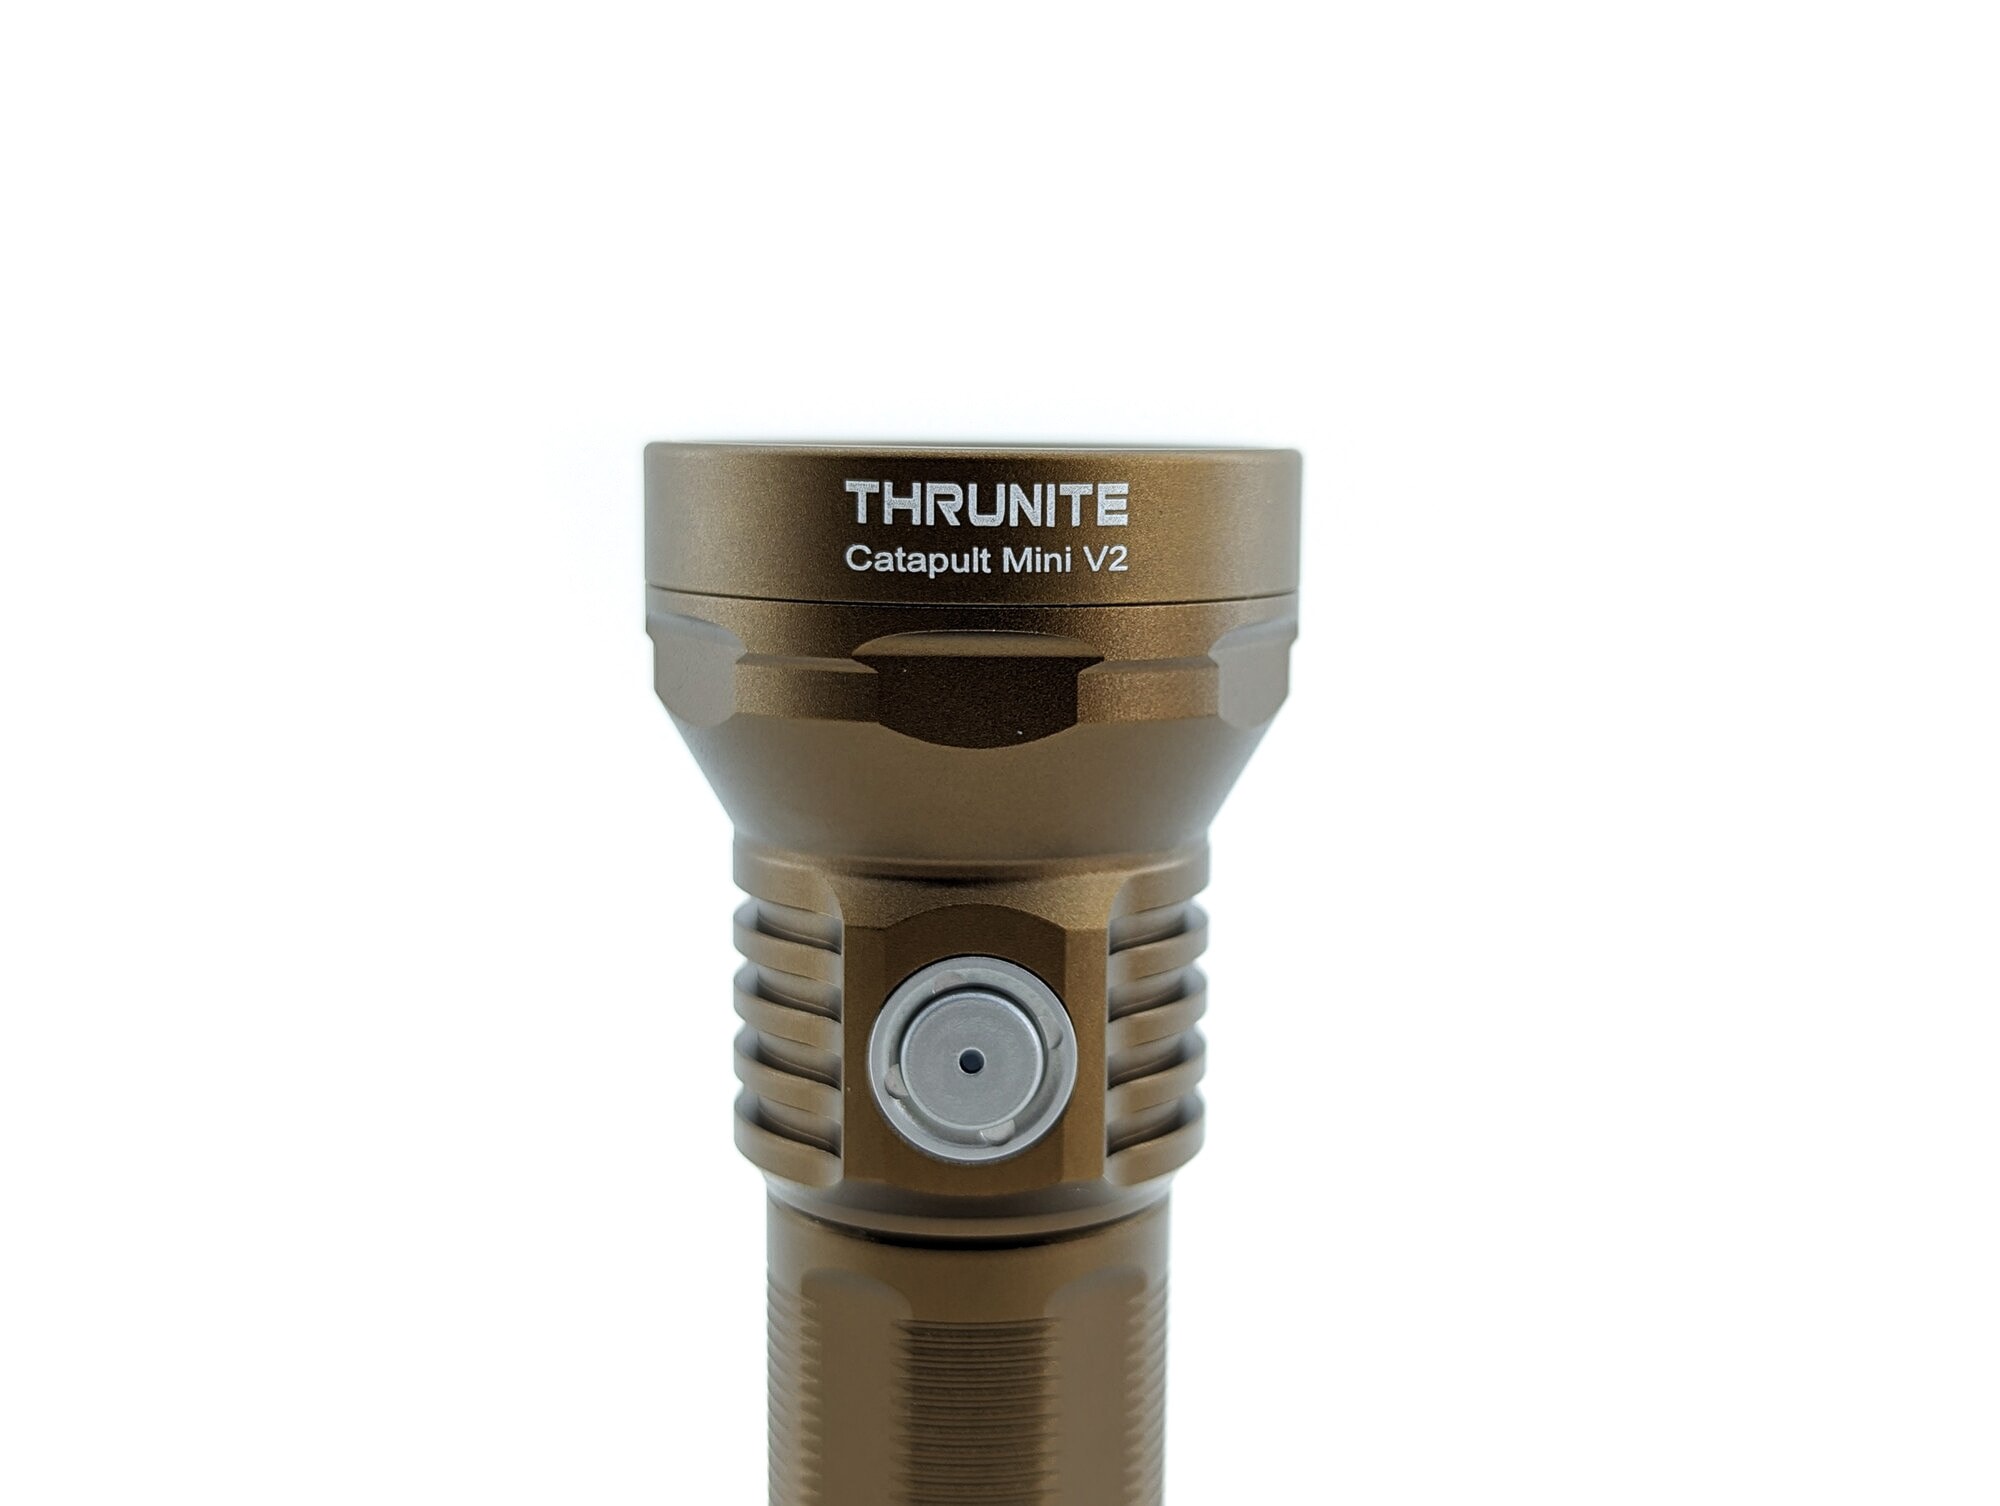 thrunite catapult mini v2 closeup 1